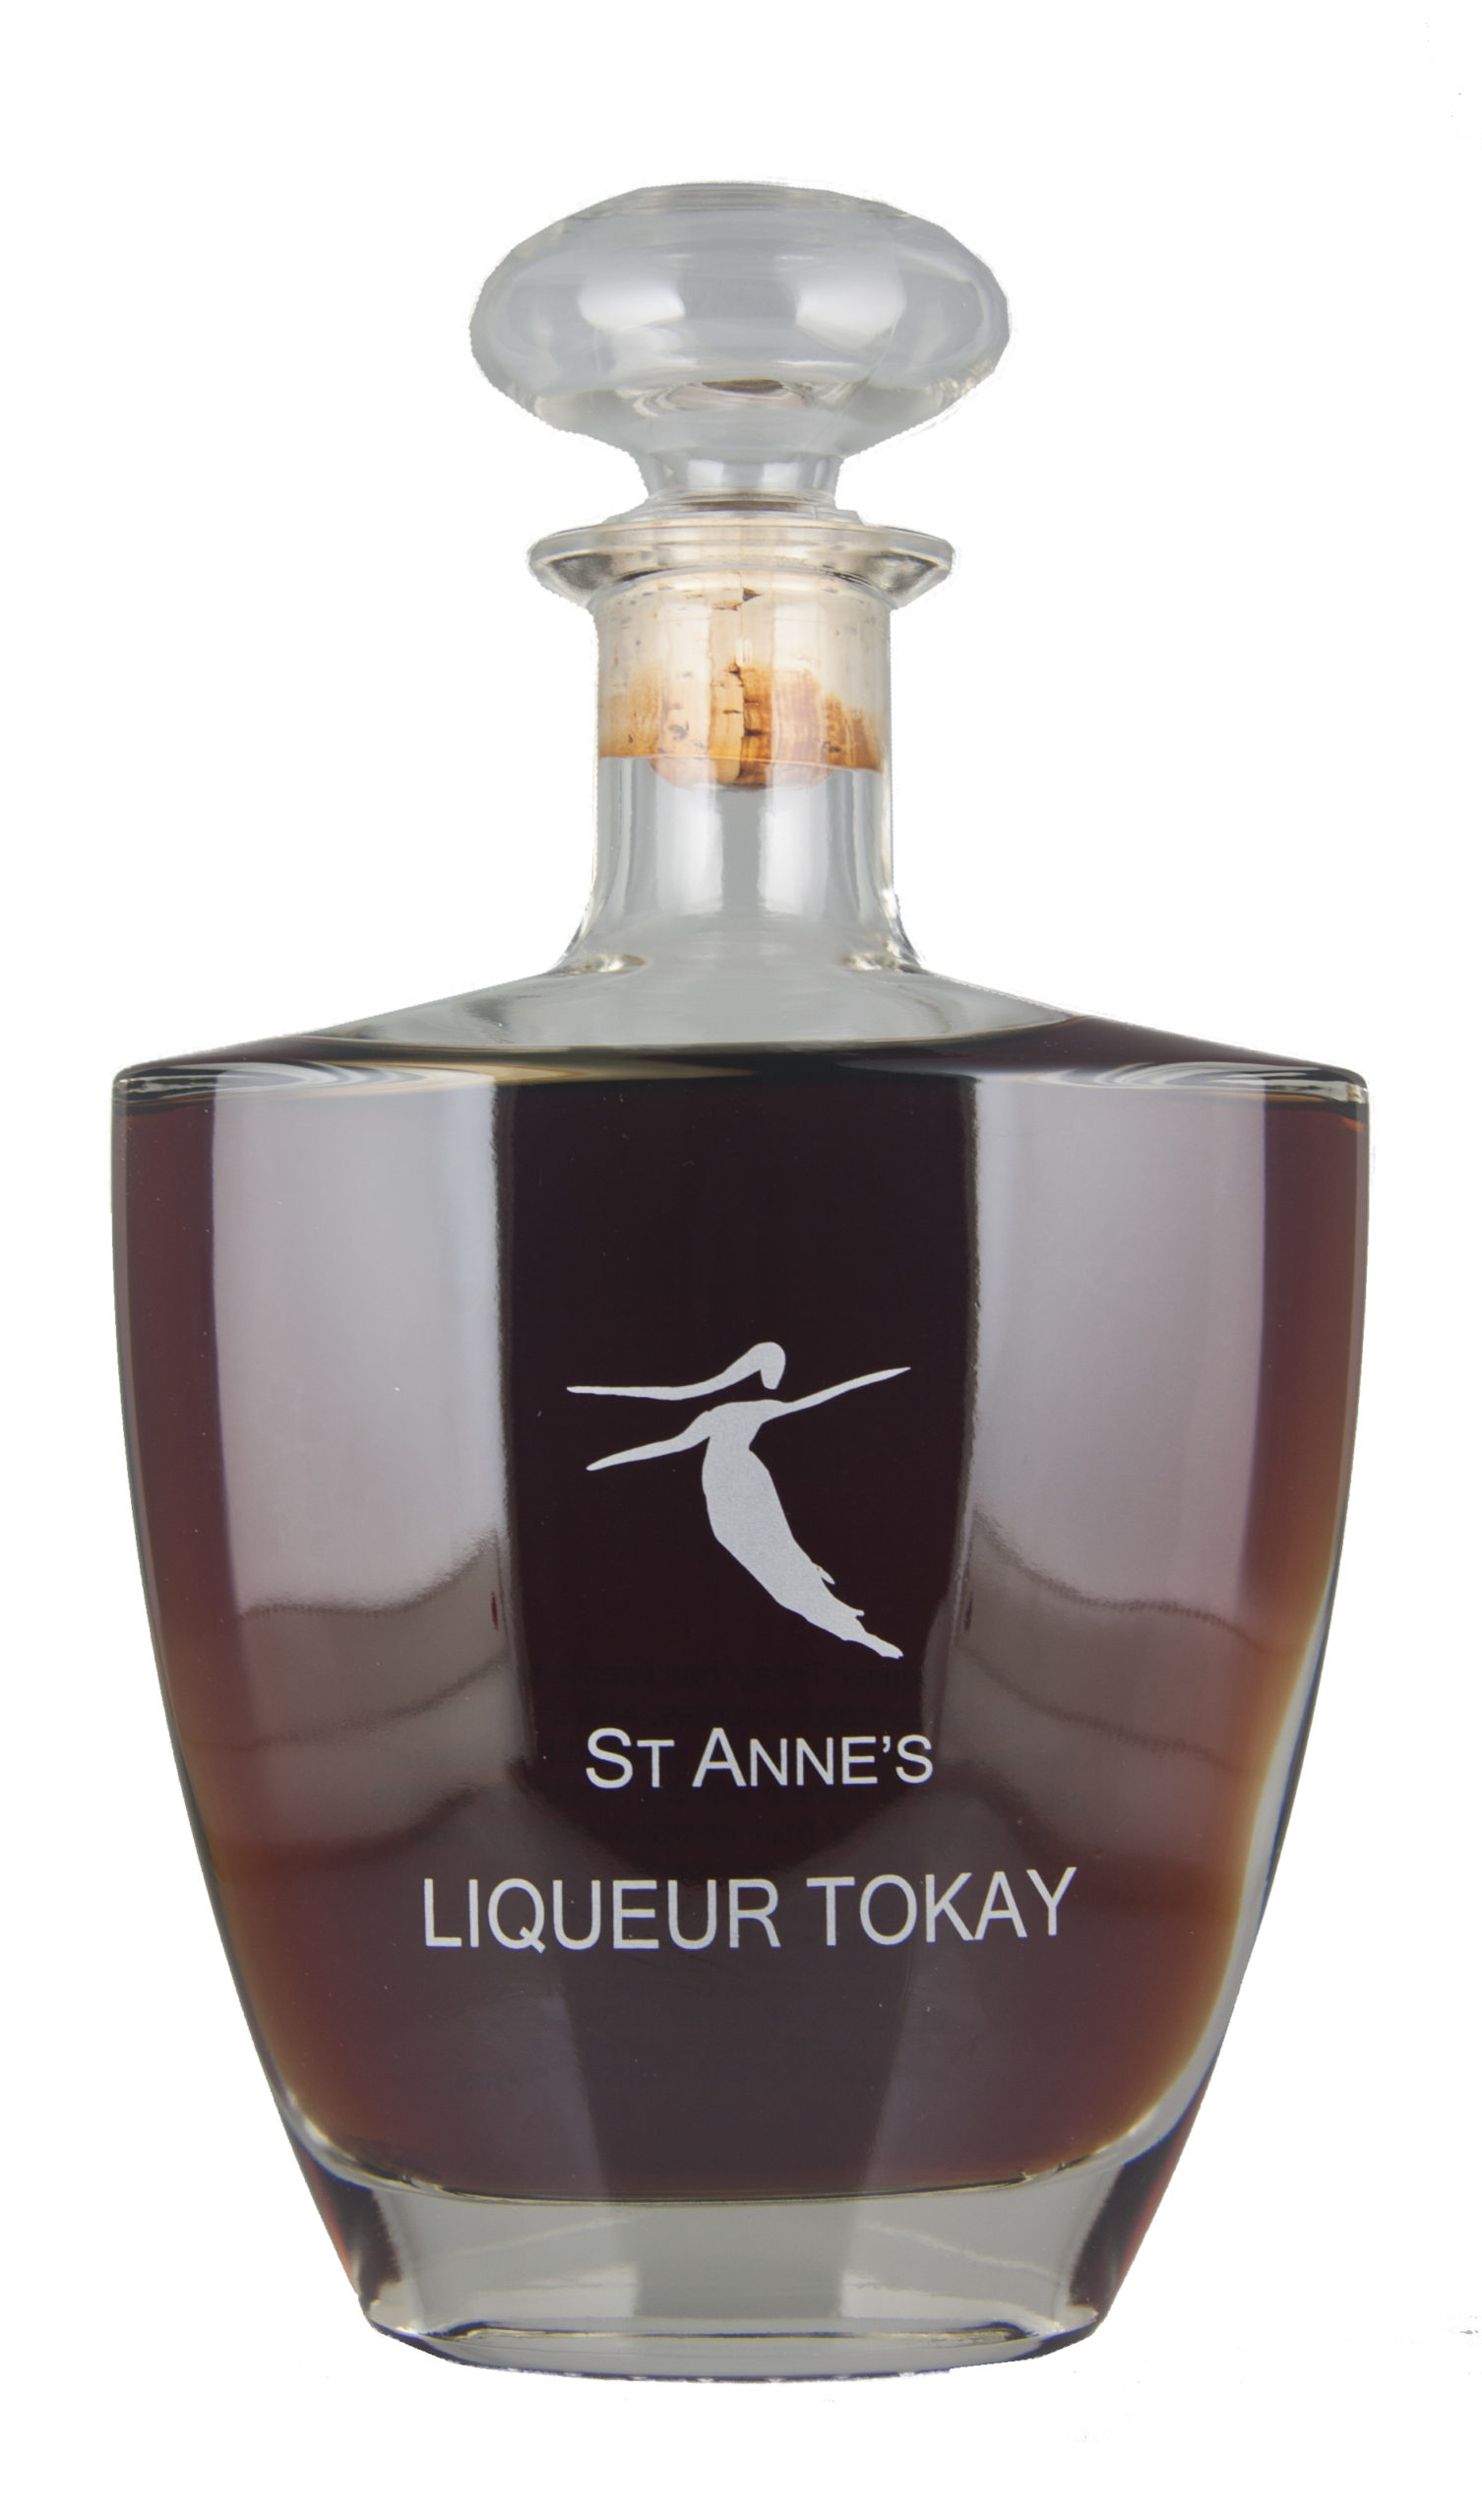 St Anne's Liqueur Tokay Decant